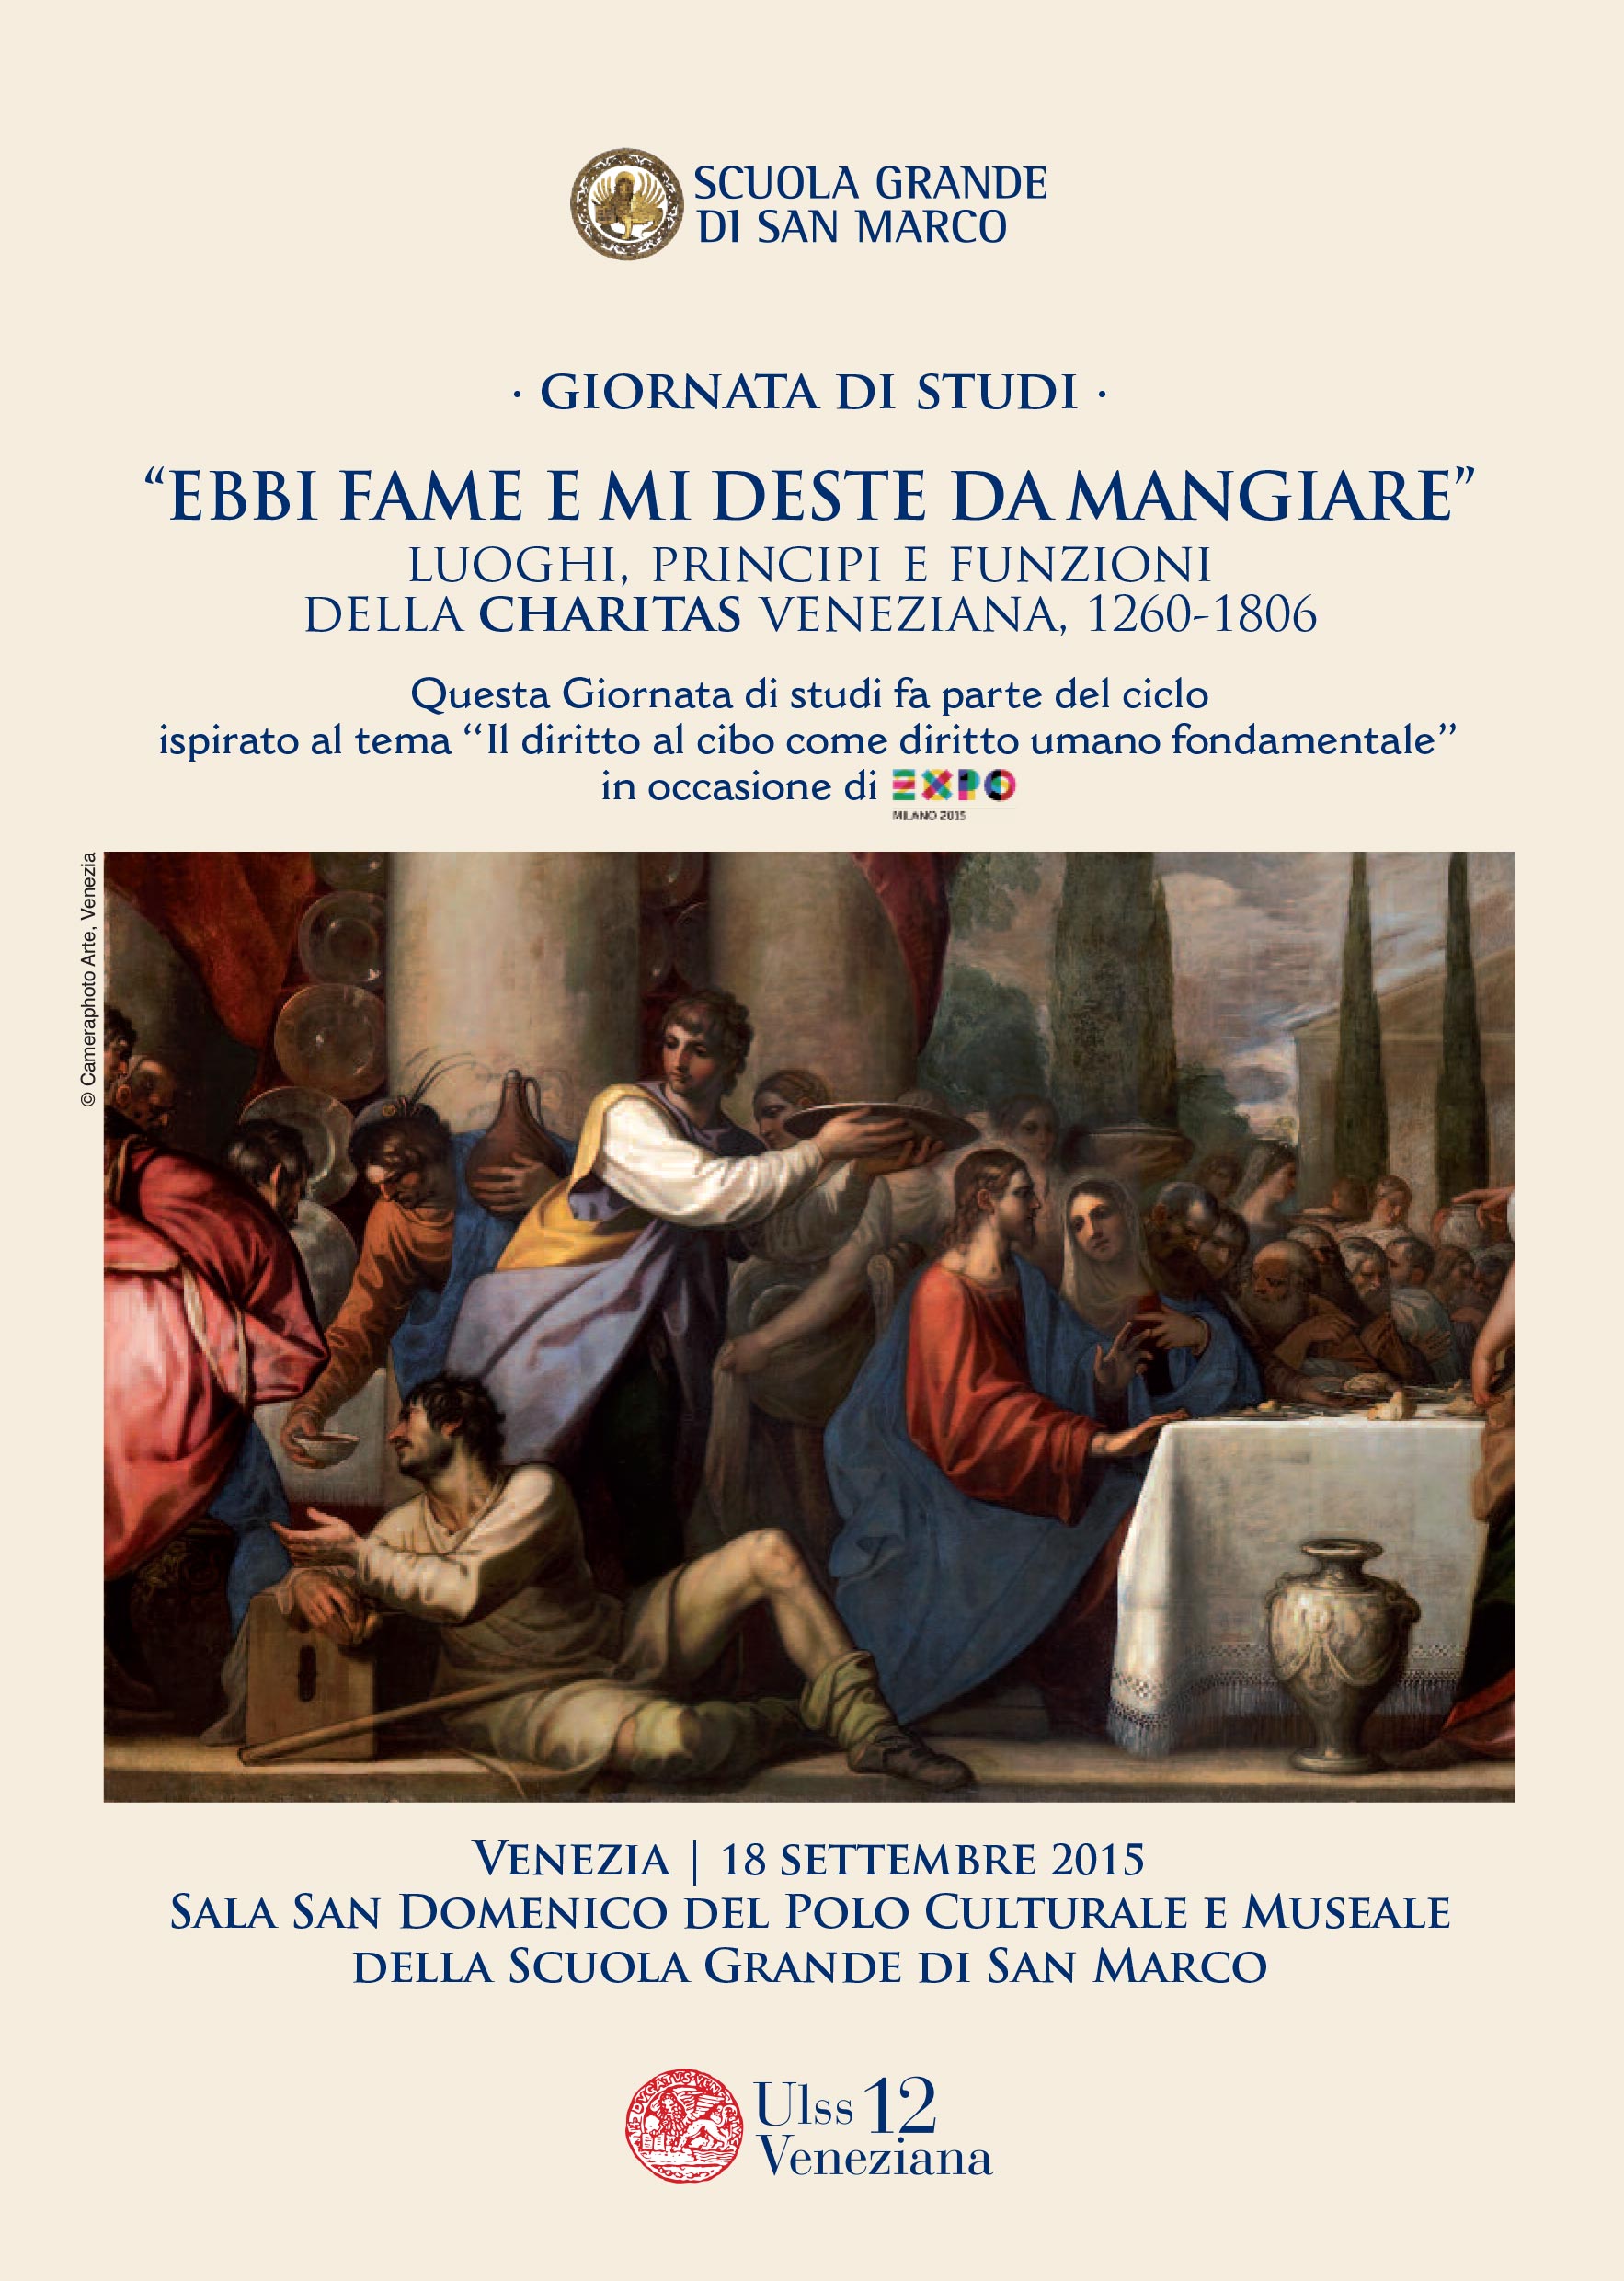 “EBBI FAME E MI DESTE DA MANGIARE” luoghi, principi e funzioni della charitas veneziana, 1260-1806